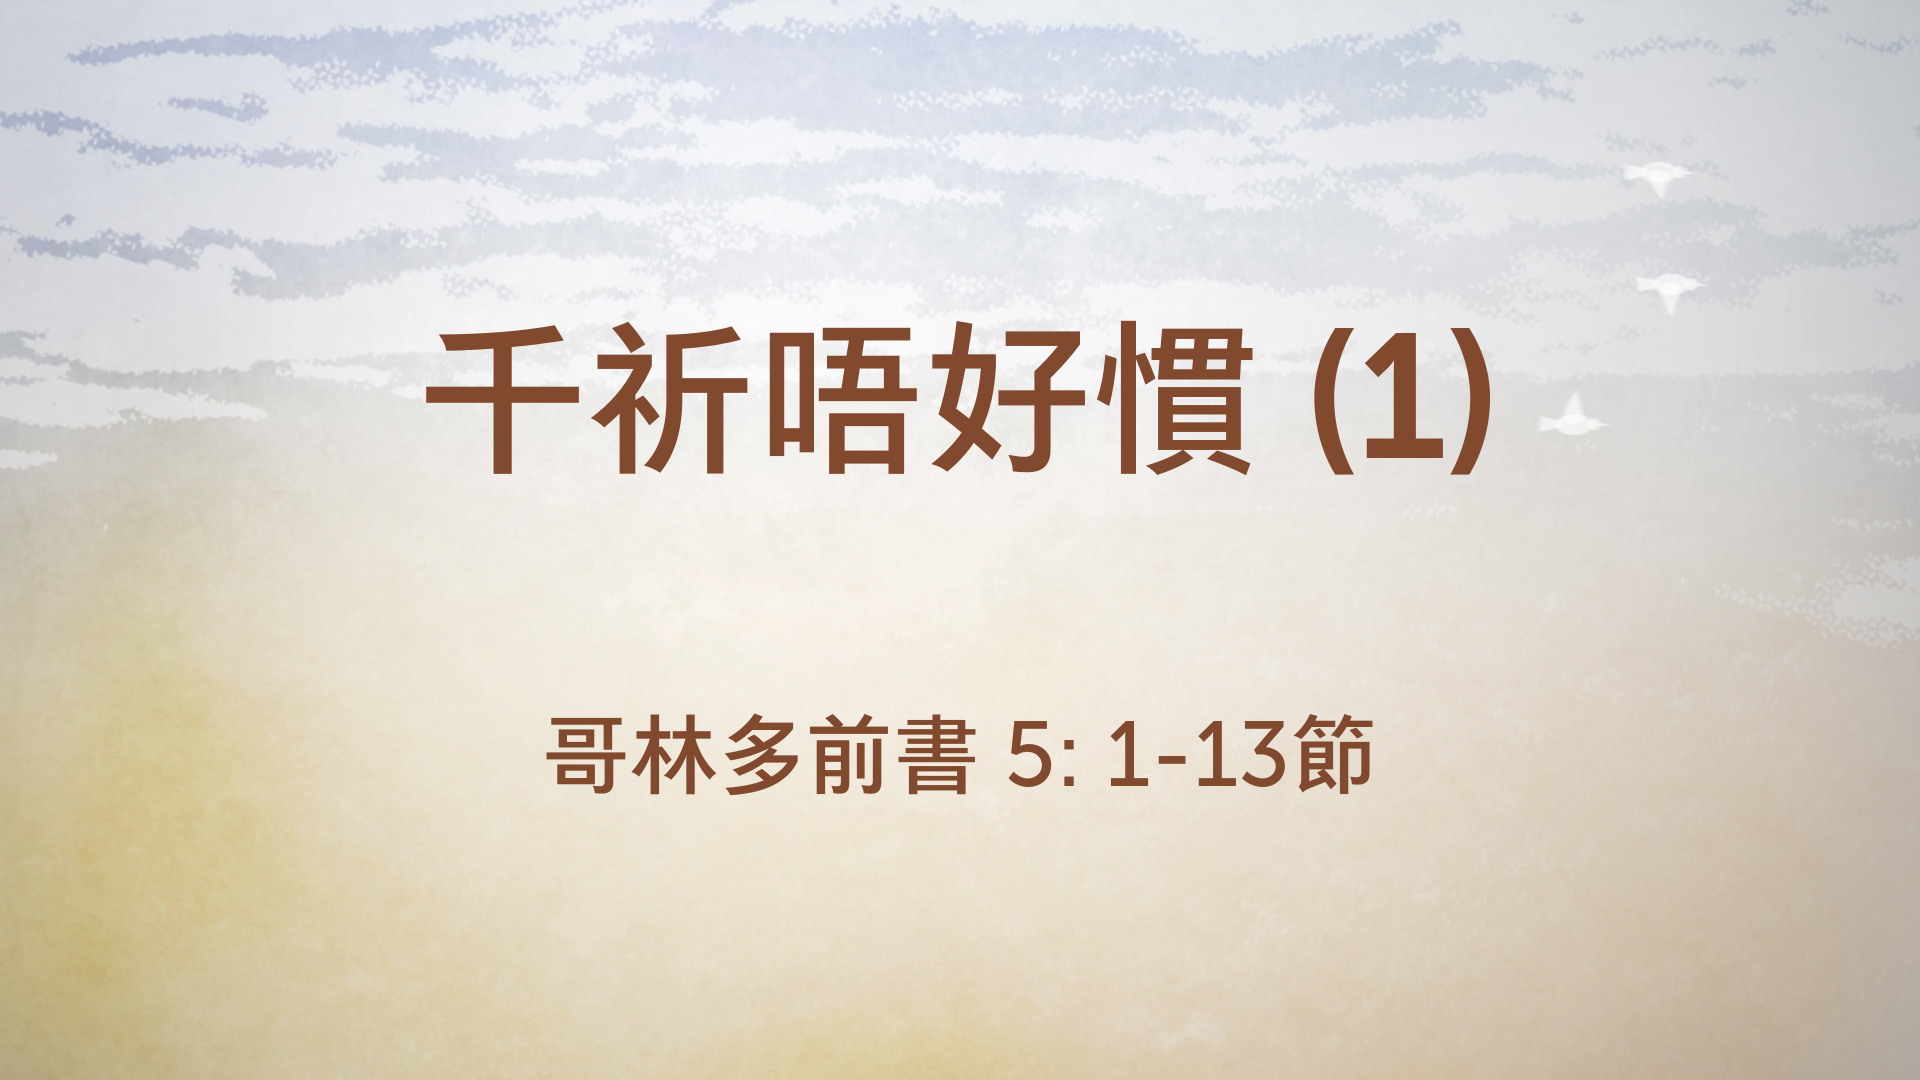 2021年4月18日 - 講道錄像 信息: 千祈唔好慣 (1)  經文: 歌林多前書 5: 1-13節 講員: 葉少斌傳道